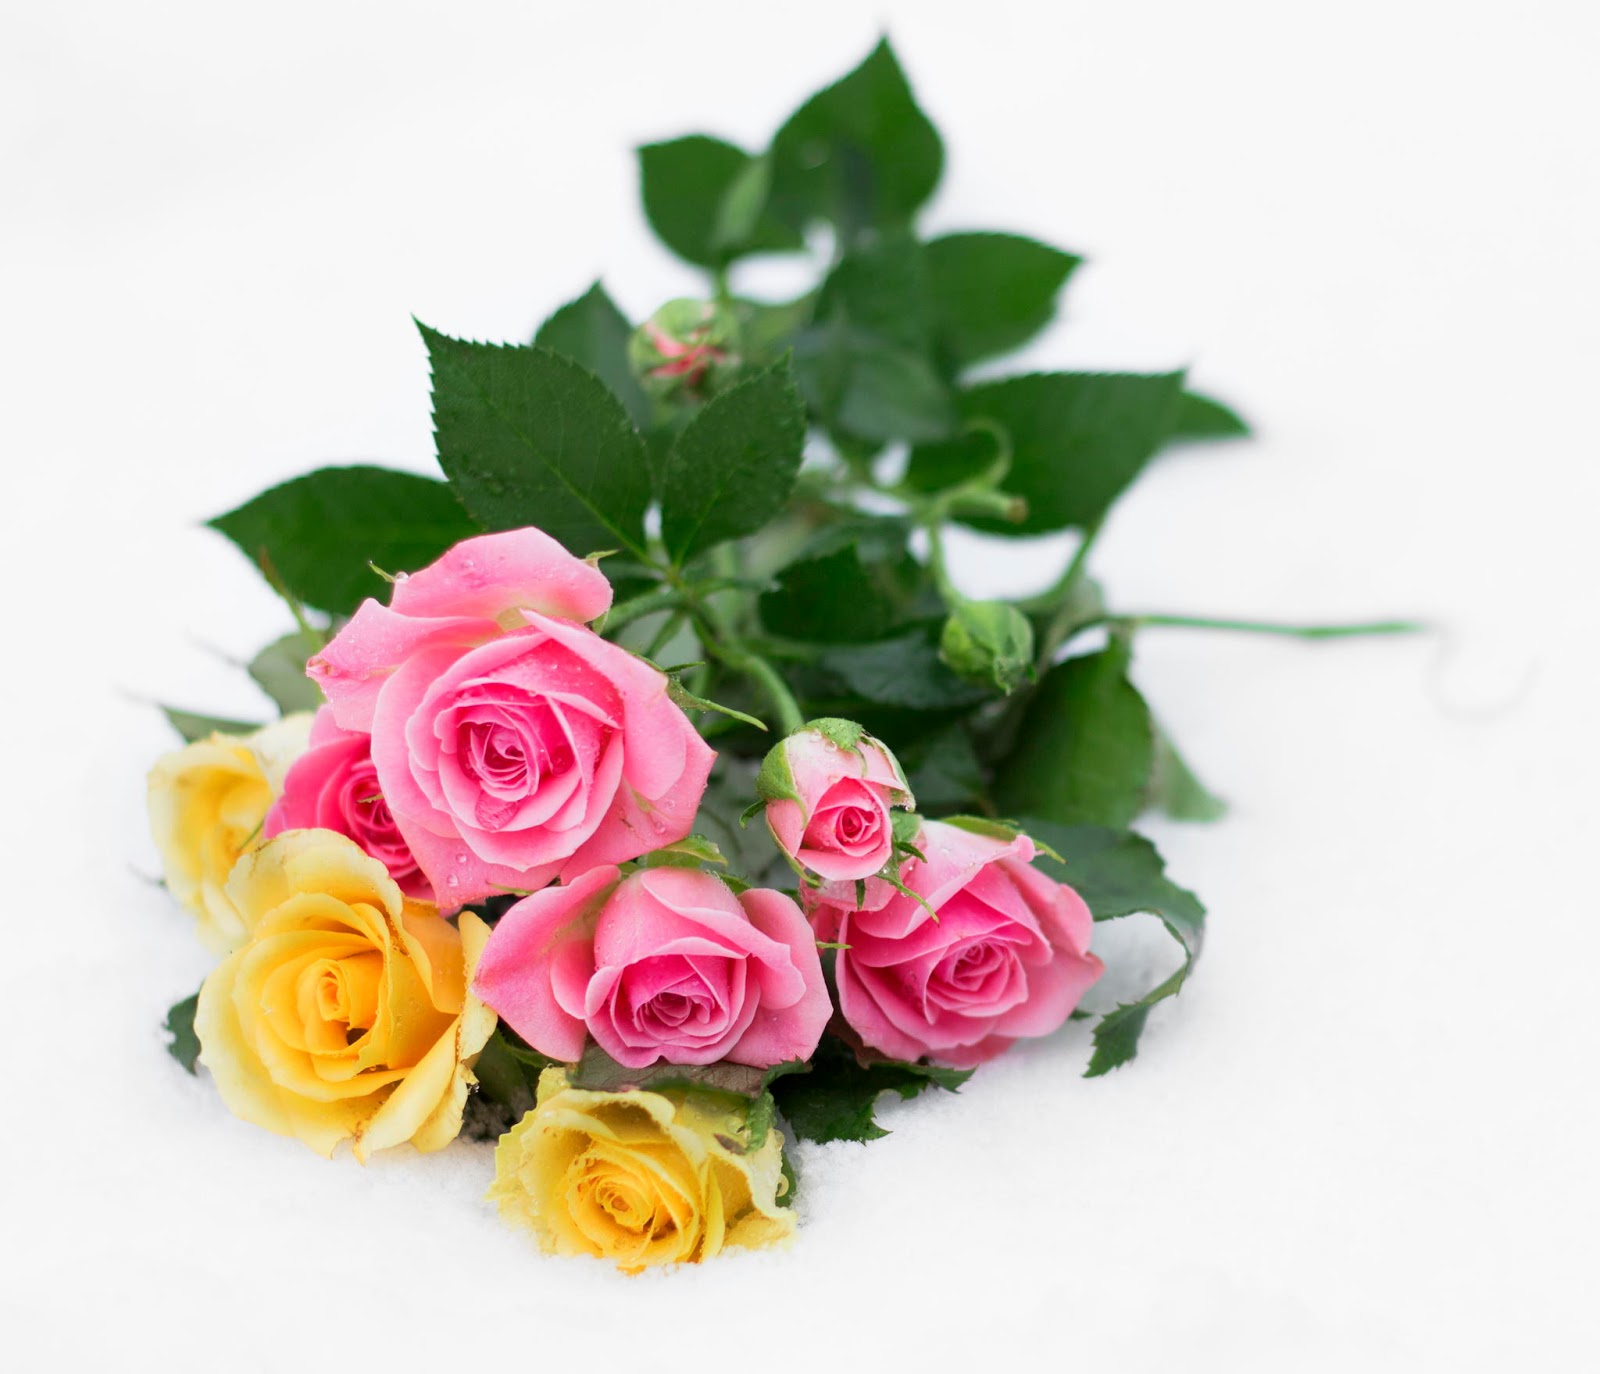 Banco de Imágenes Gratis: 25 fotos de rosas rojas, arreglos florales y  postales para el Día del Amor y la Amistad. - Happy Valentine's Day